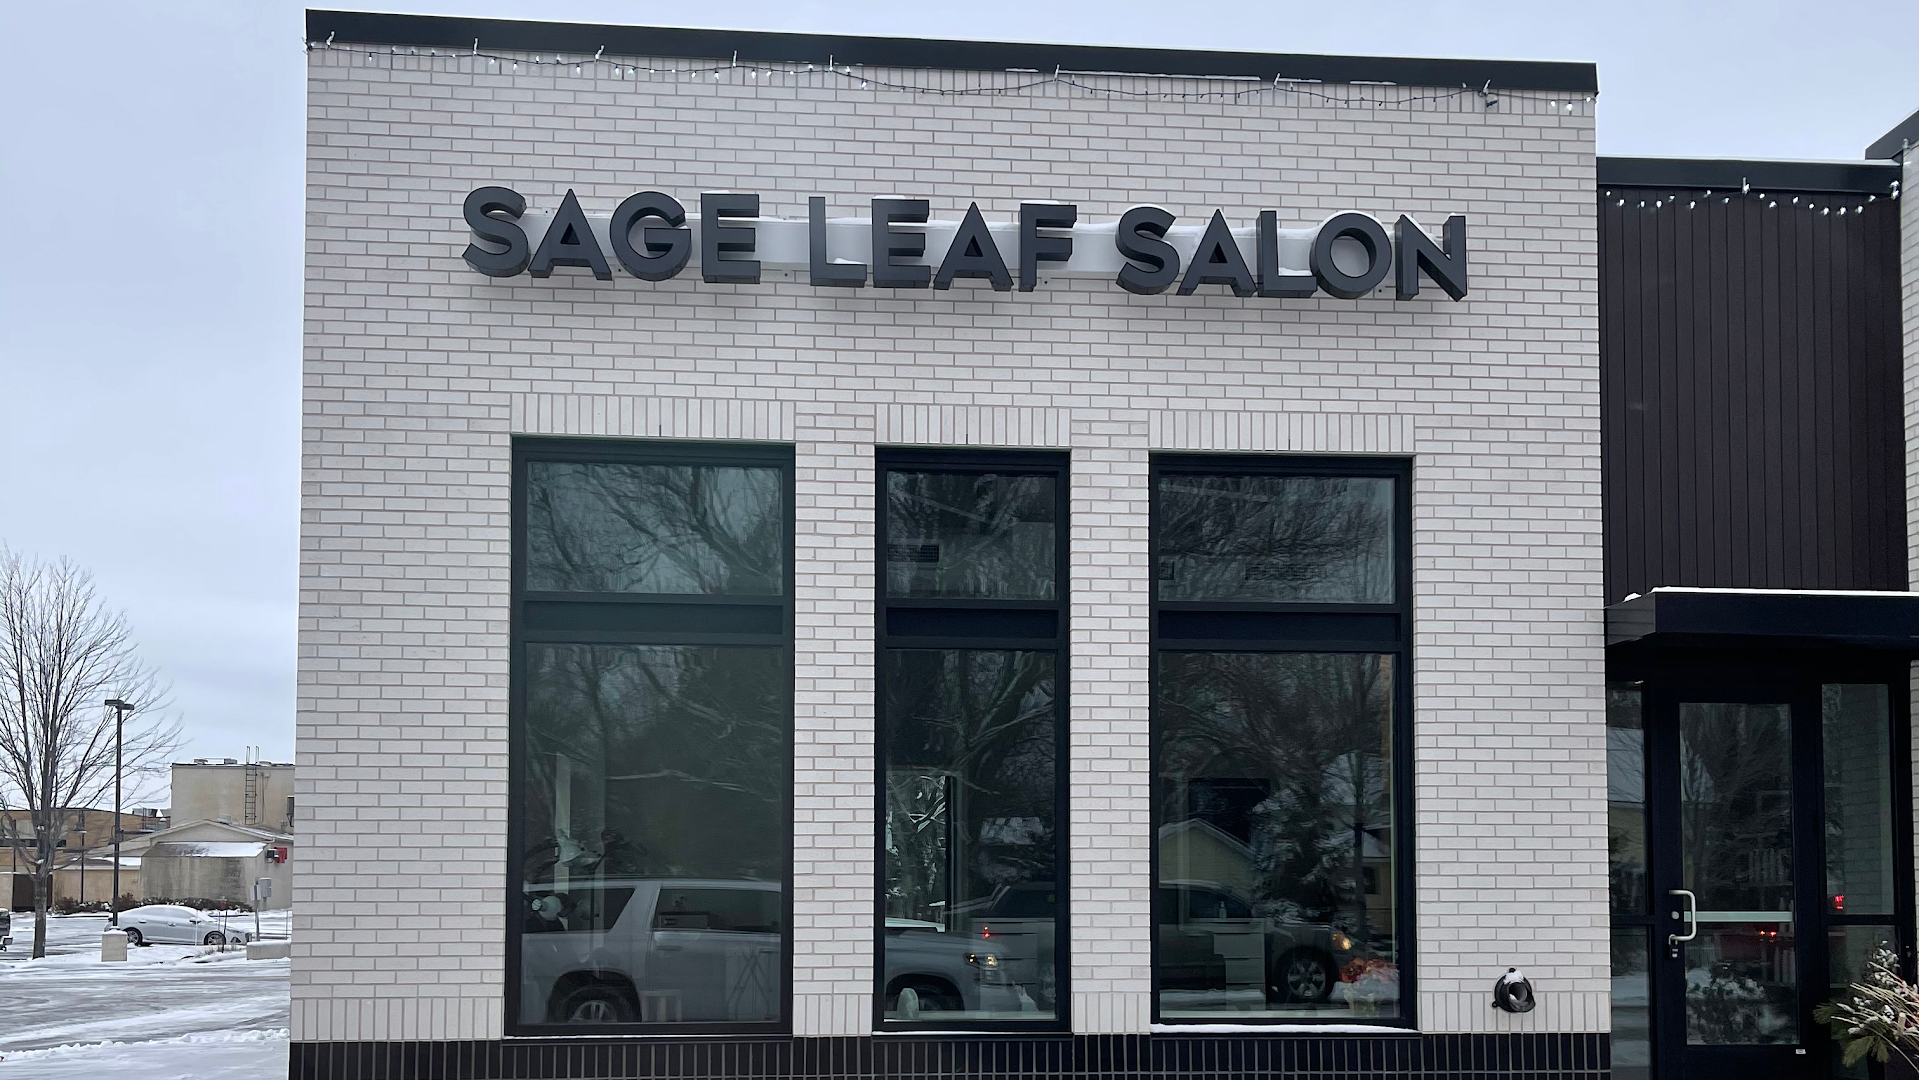 Sage leaf salon